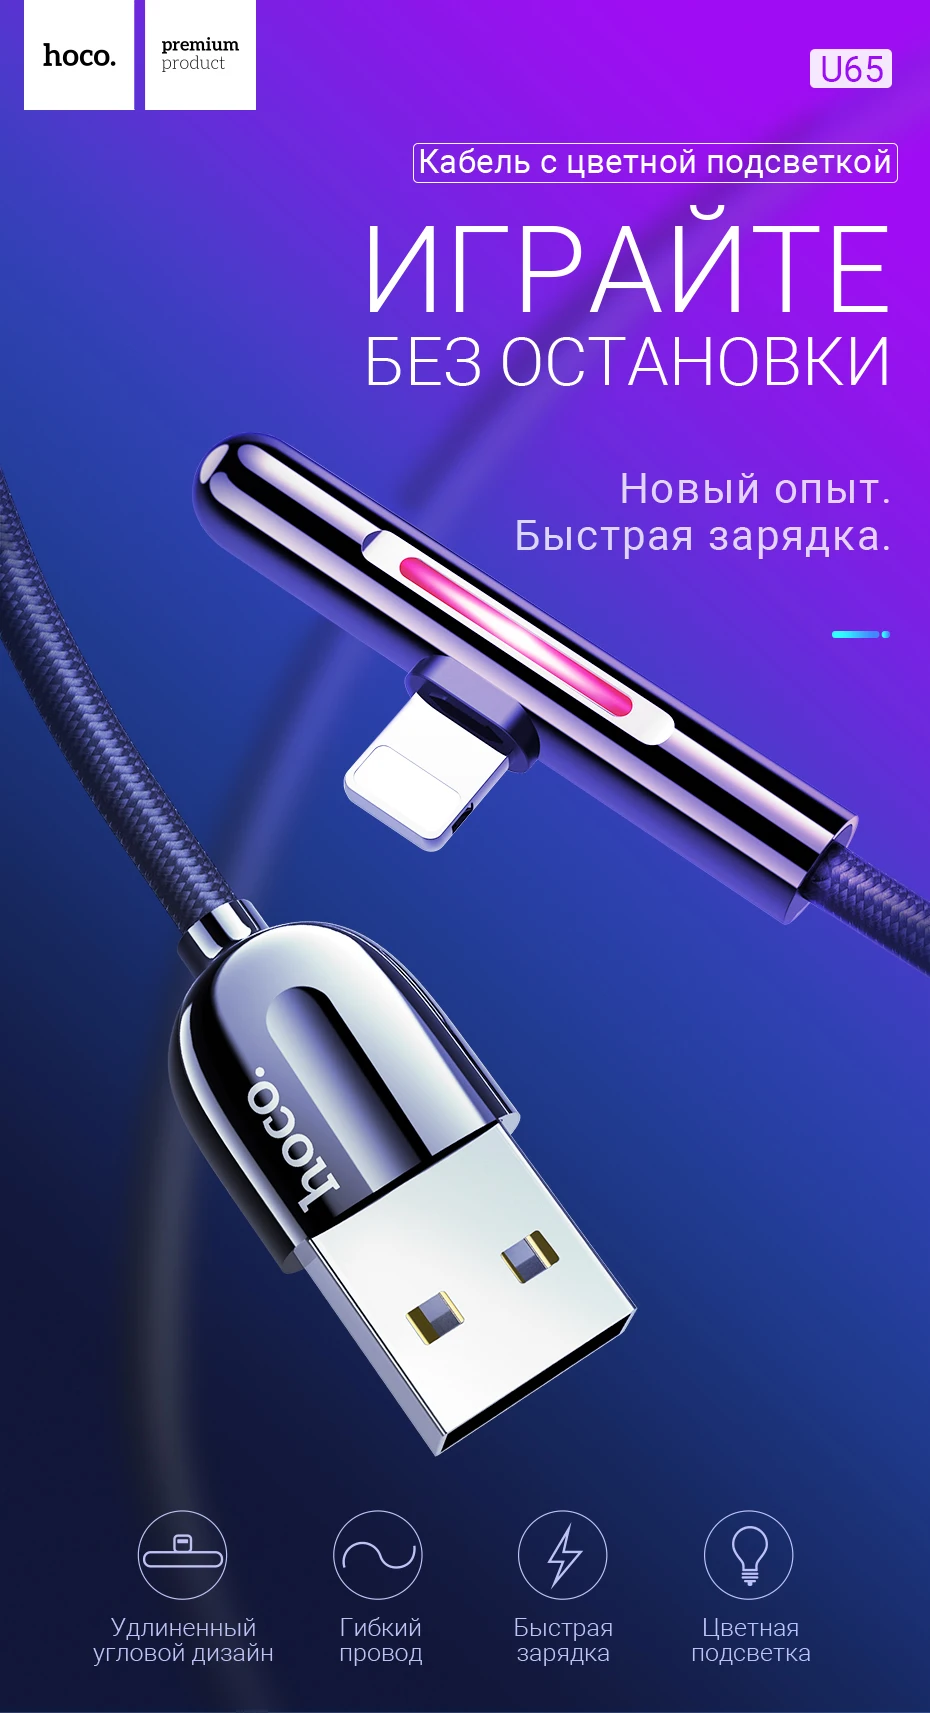 hoco зарядный кабель для lightning usb зарядник для iphone x xs max xr передача данных цветная подсветка индикатор угловой коннектор ток 2.4А шнур для зарядки зарядник для айфона айпад шнурок лайтнинг на айфон игровой